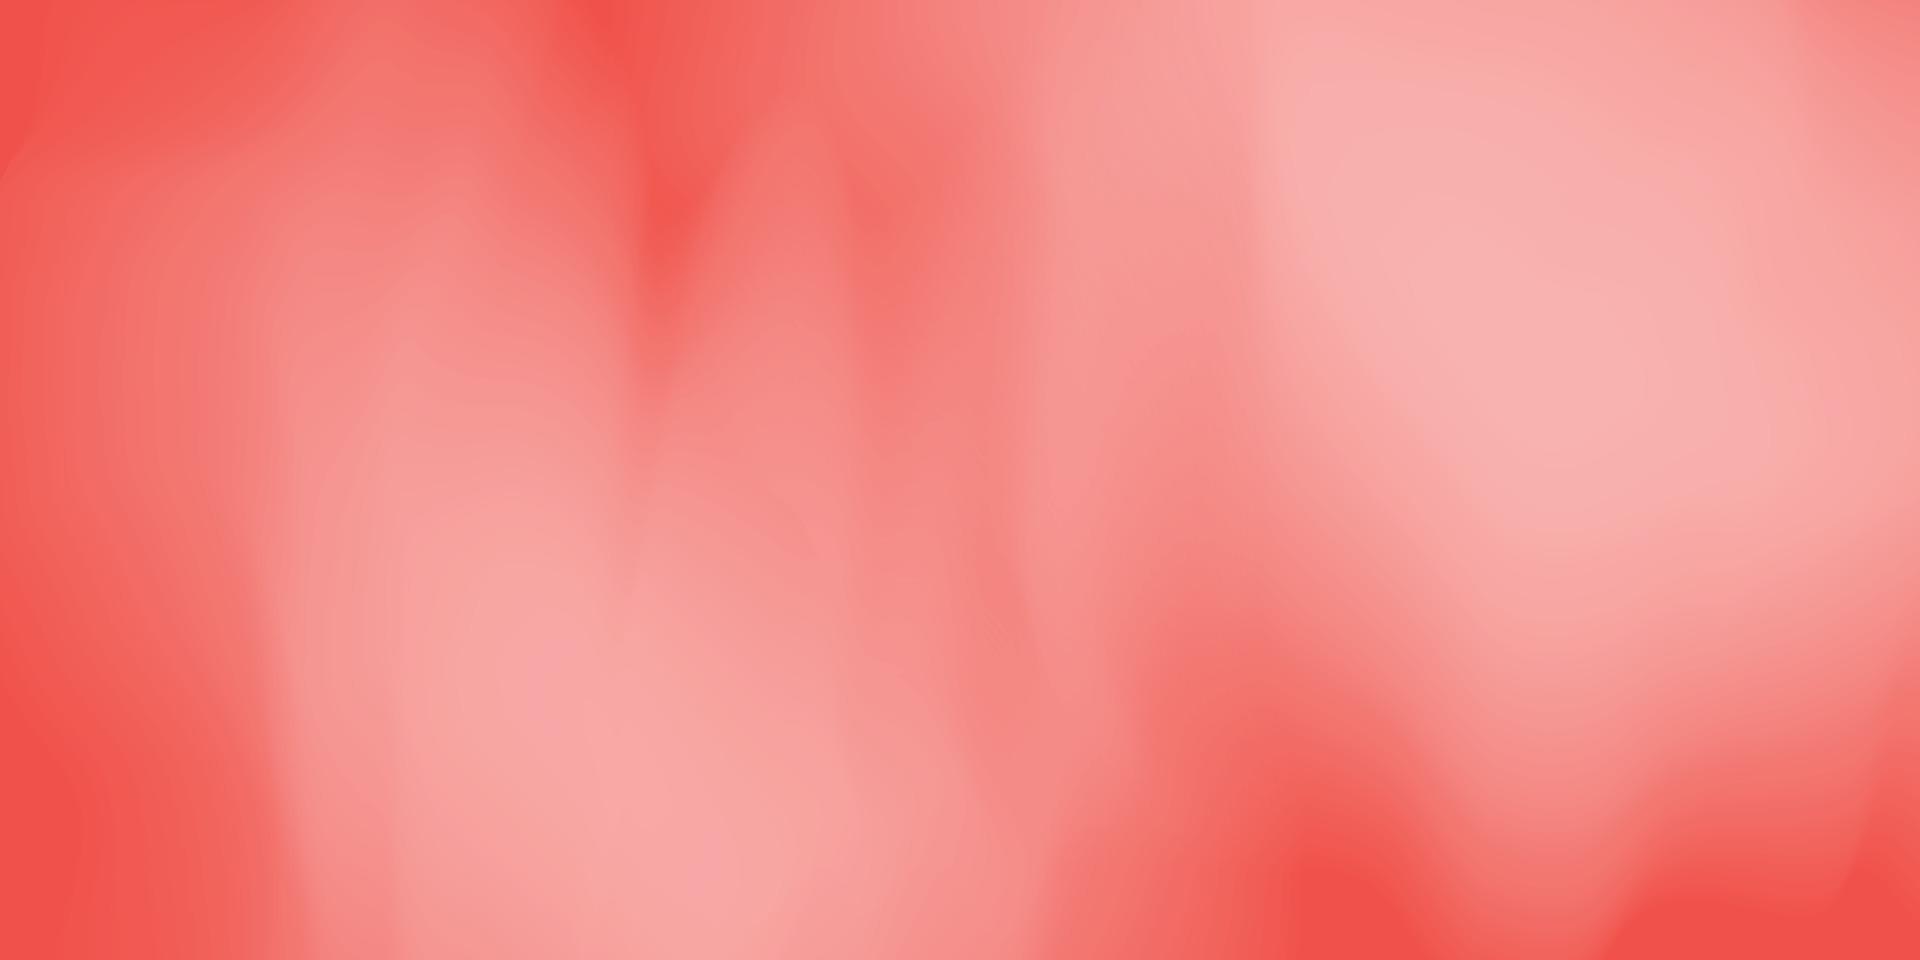 Concepto de fondo degradado rojo pastel abstracto para su diseño gráfico colorido, vector